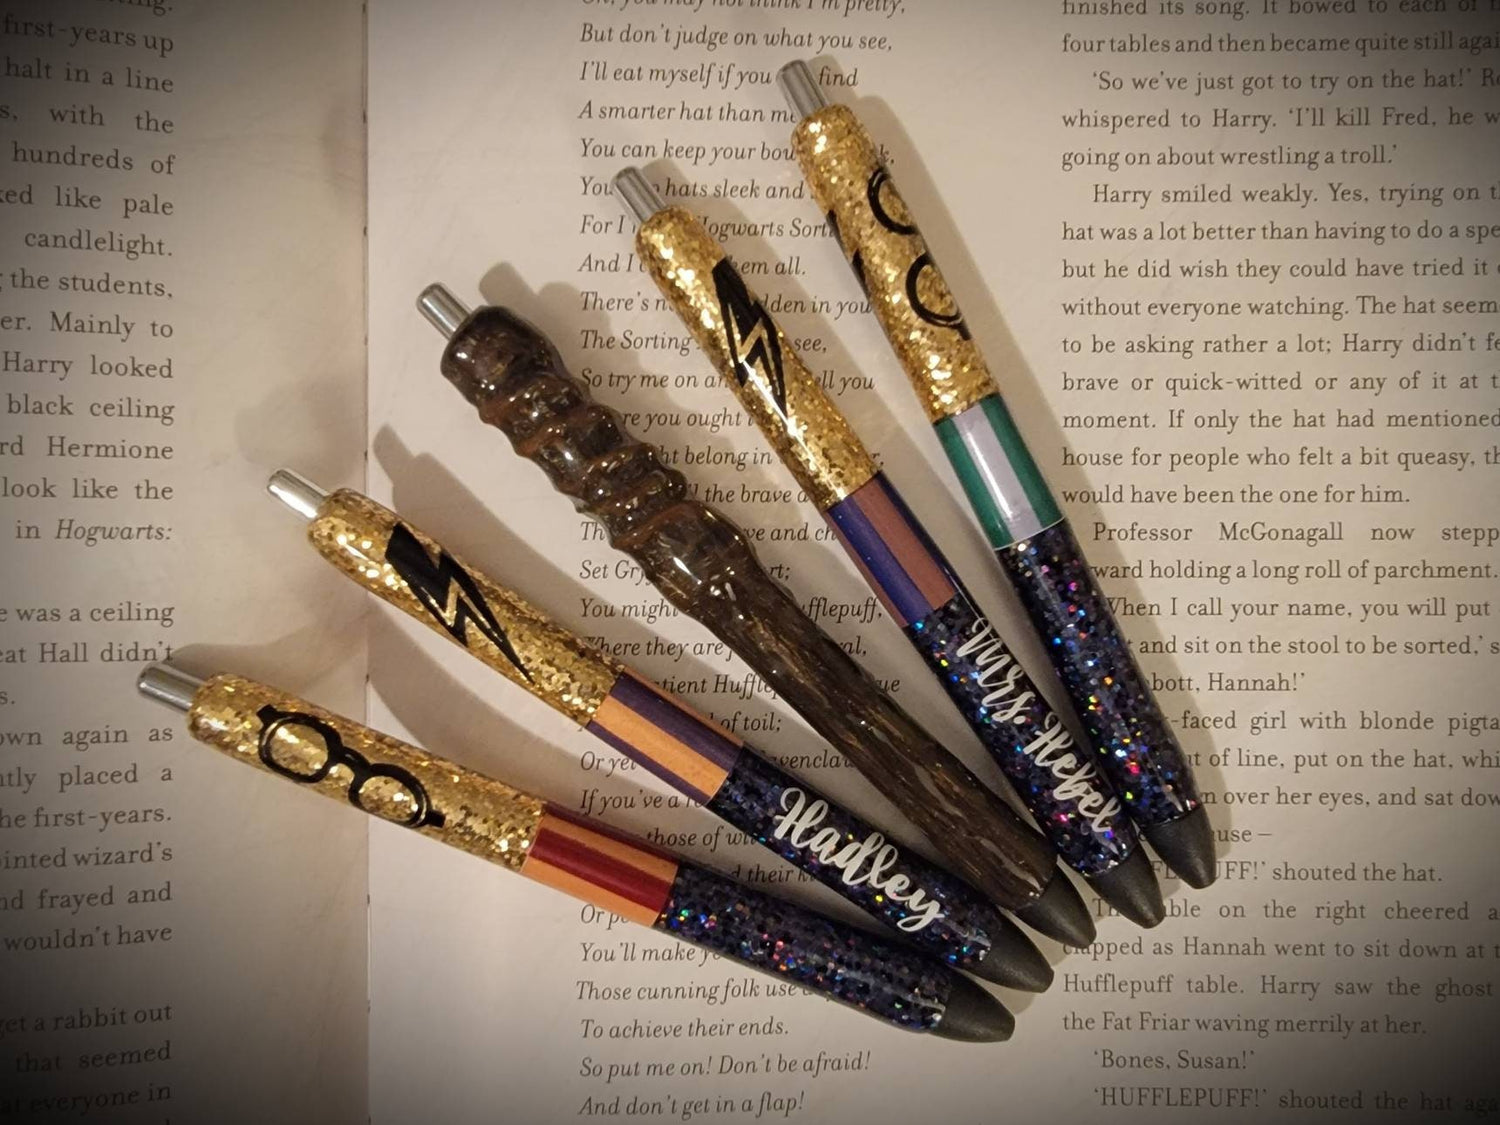 Days of the Week Pens, Weekday Pens, Epoxy Resin Pen, Inkjoy Refillable  Pen, Resin Pen, Epoxy Pen, Custom Pen, Pretty Pen, Glitter Pen